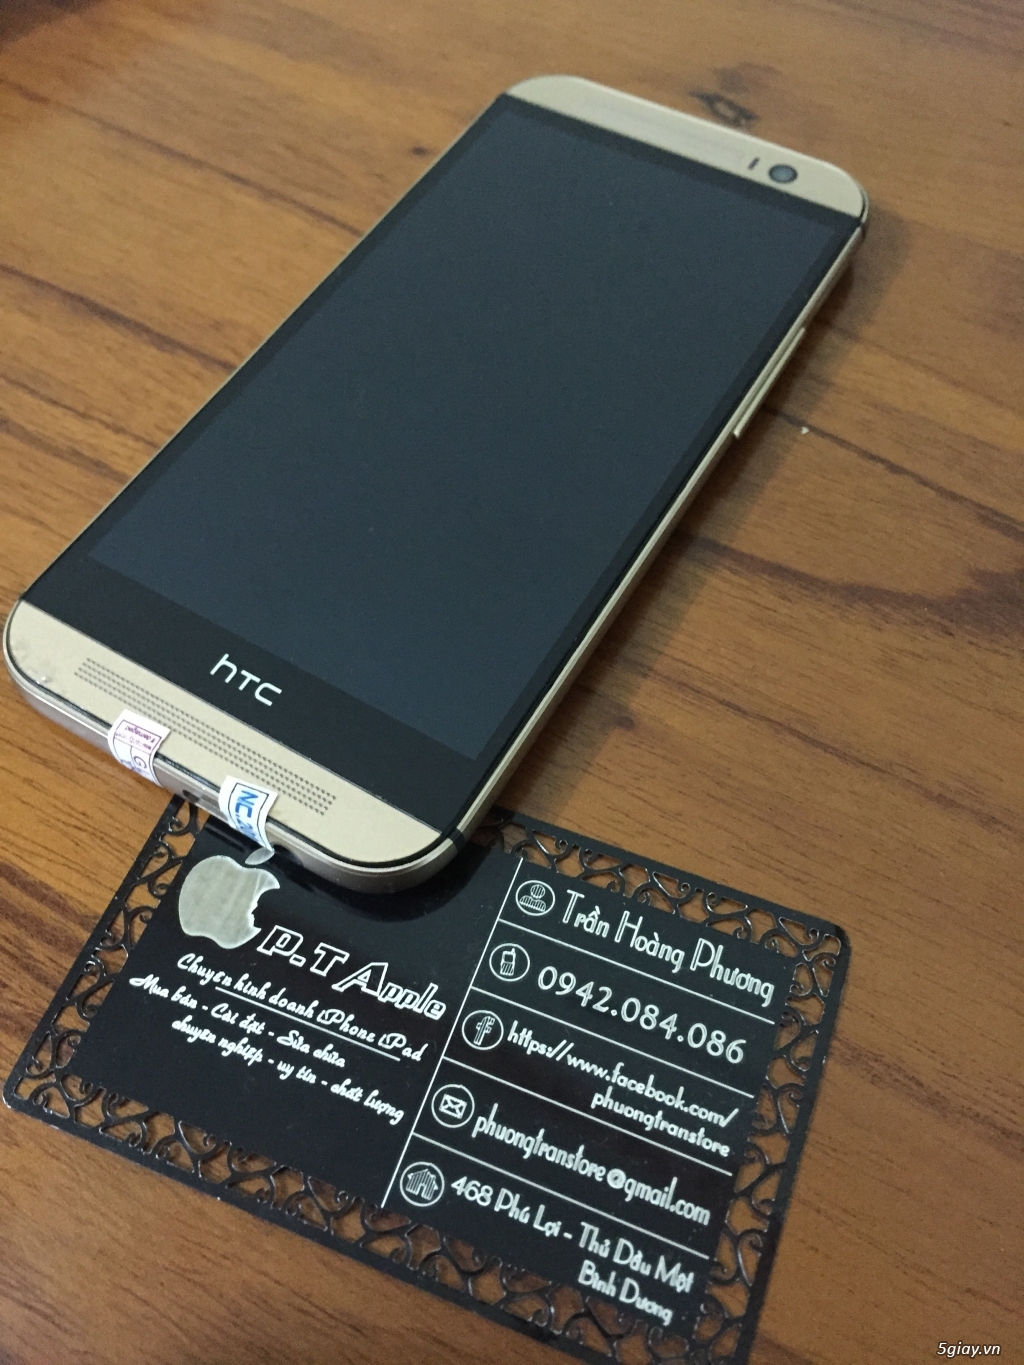 HTC ONE M8 - 32G -  98-99%. Bao giá tốt nhất thị trường Bình Dương. ☎ : 0942.084.086 - 3